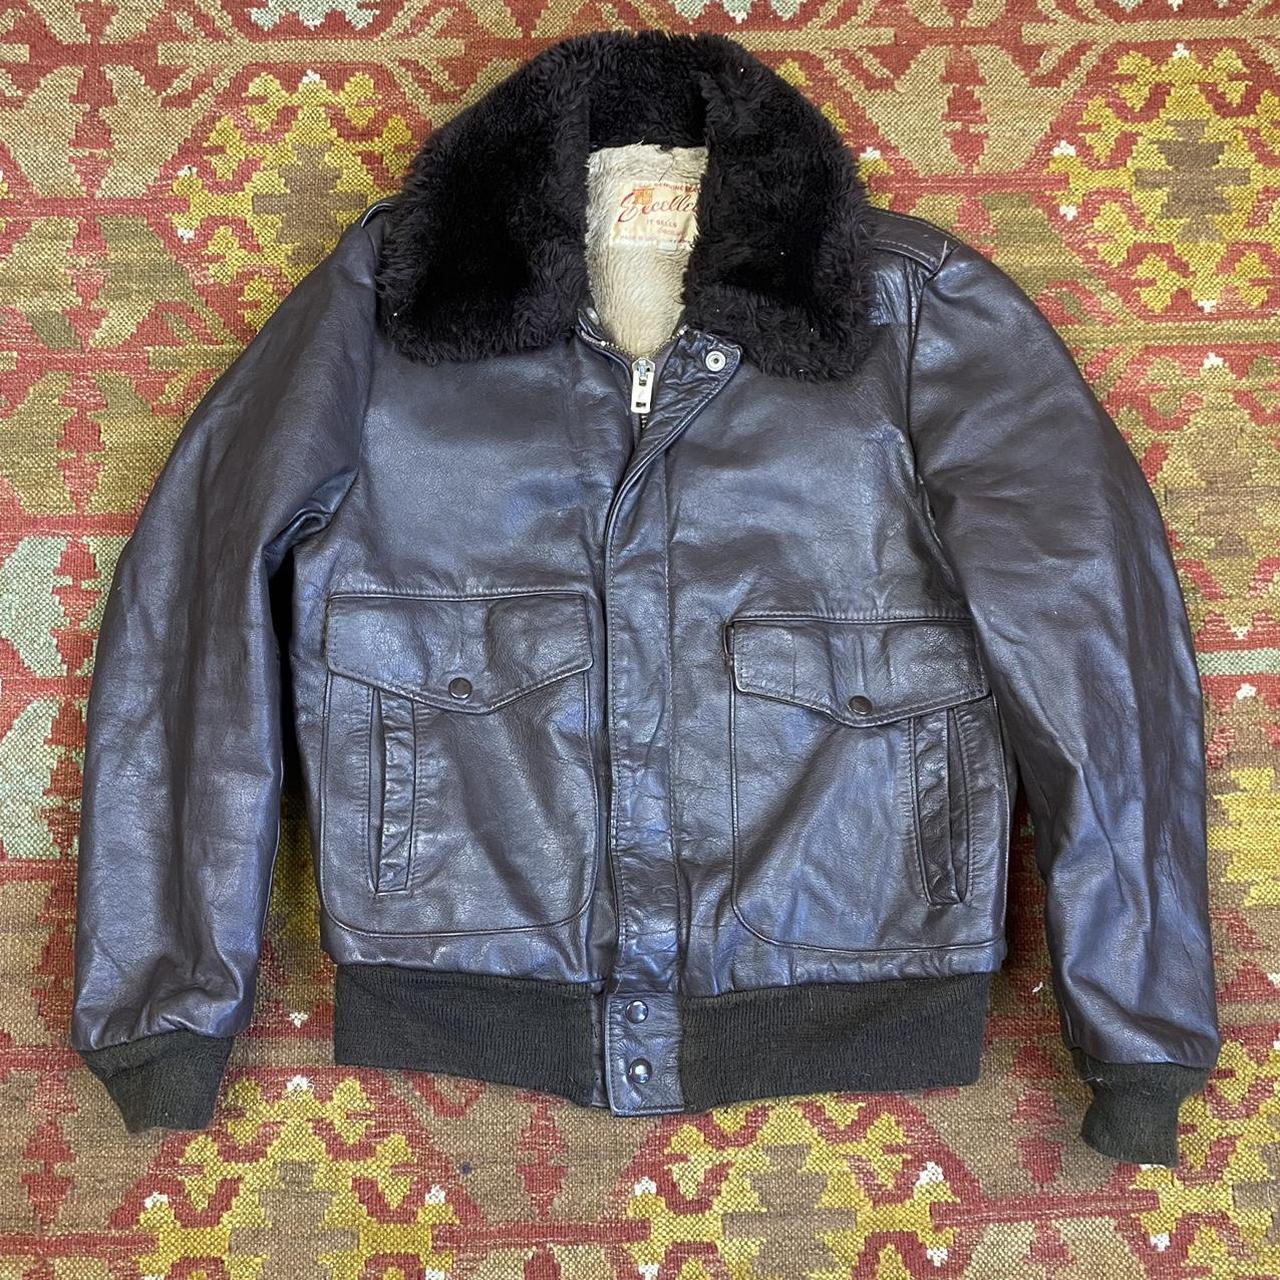 Vintage 1970s excelled brand leather bomber jacket... - Depop